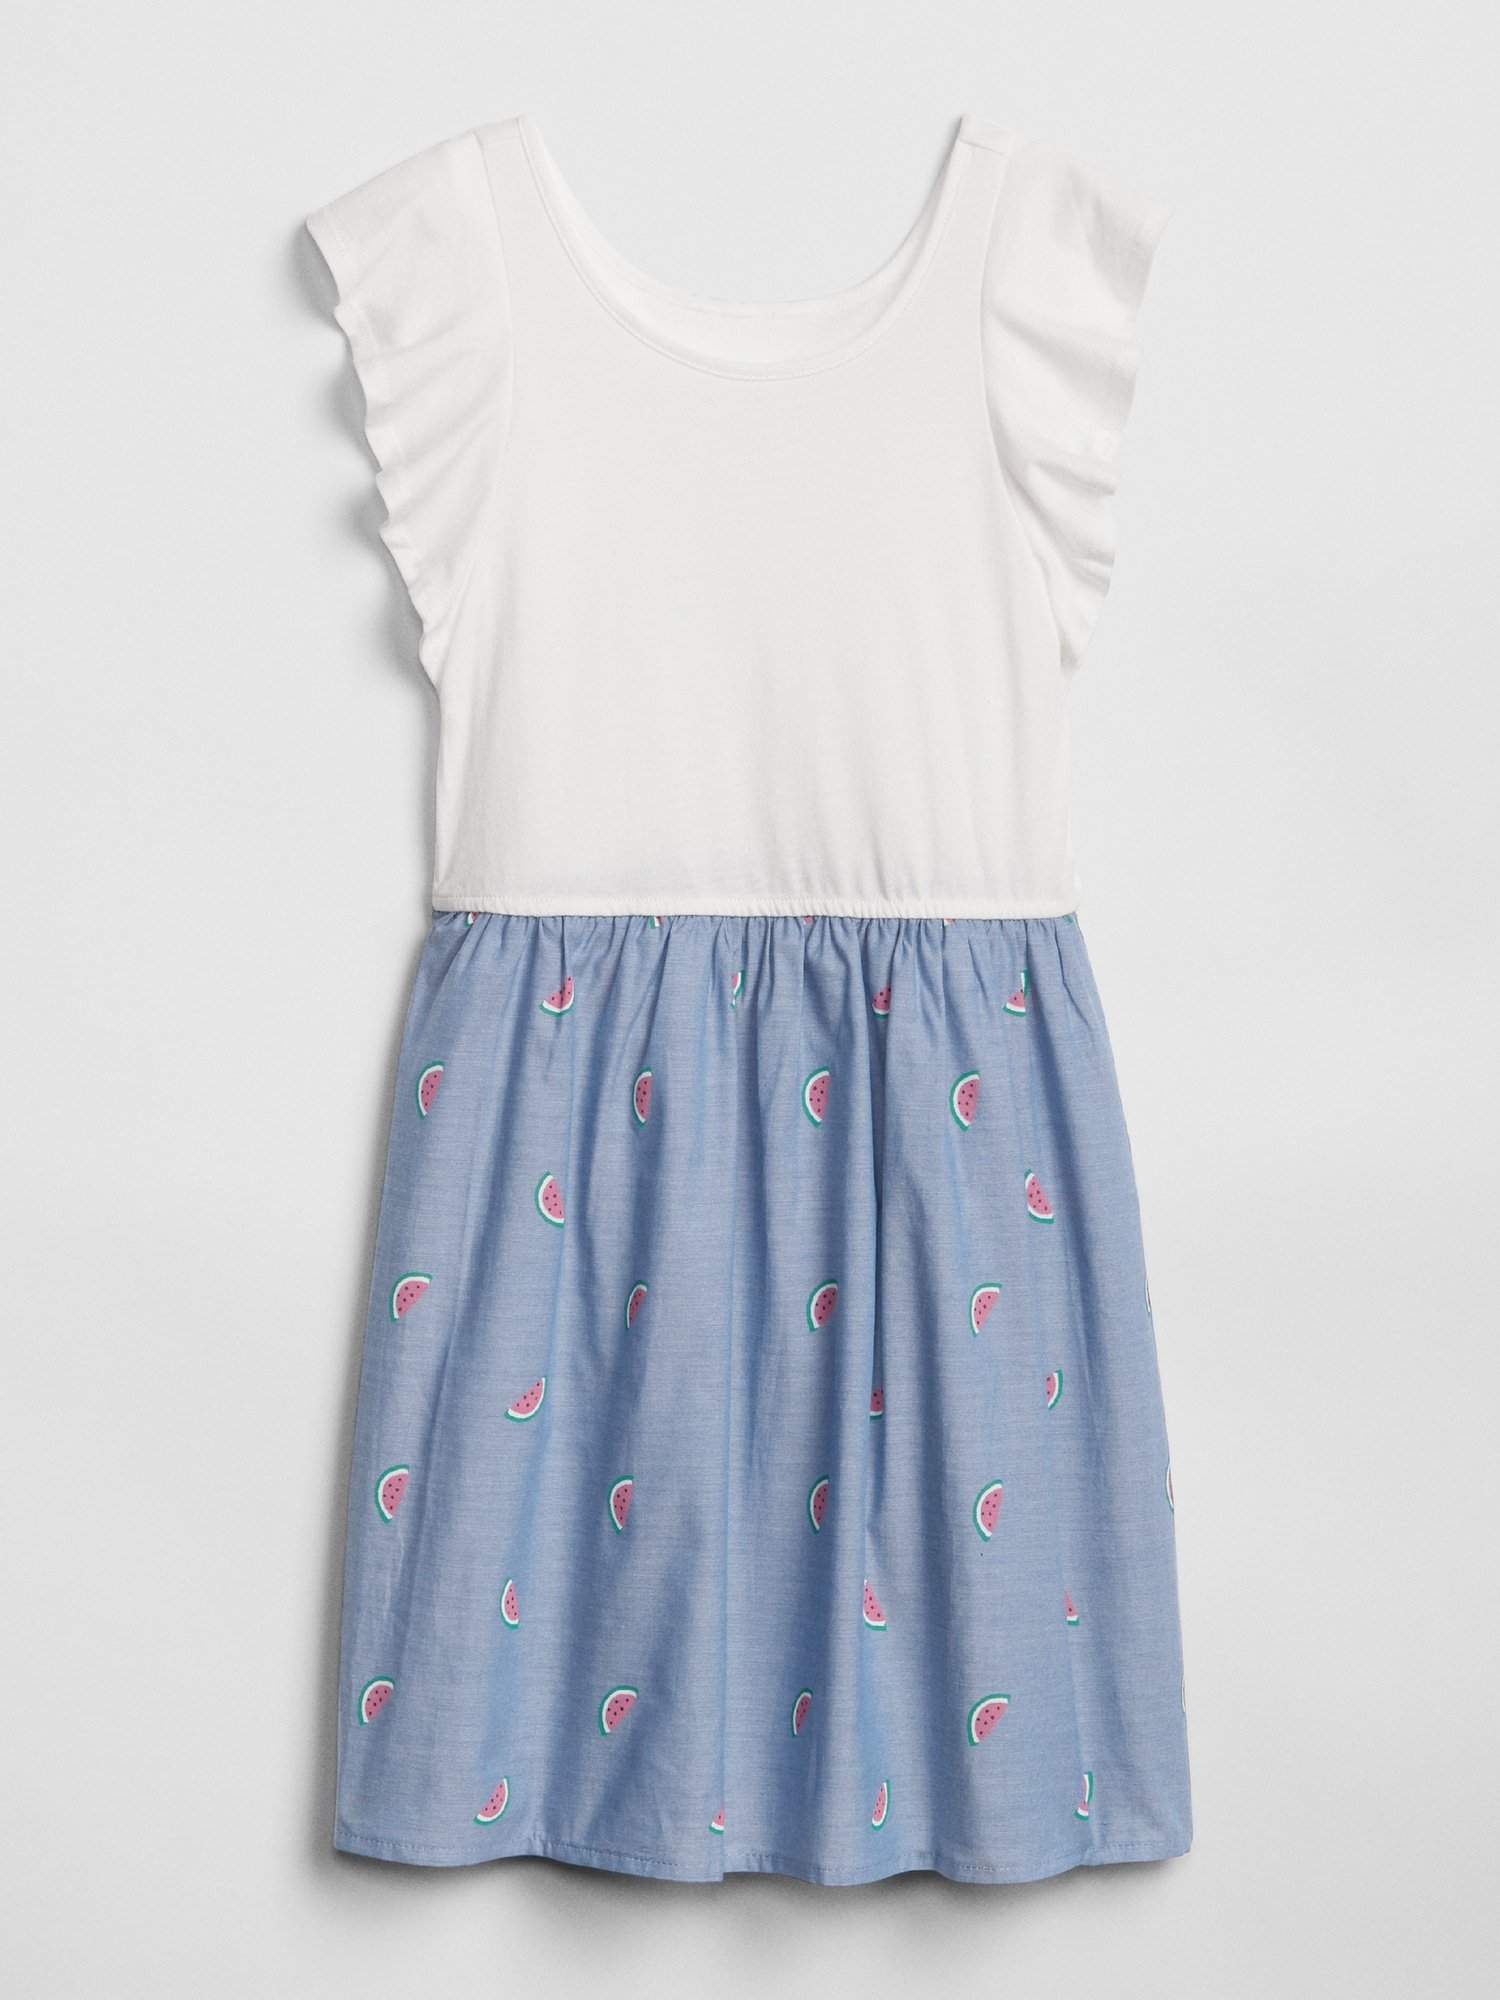 Kız Çocuk Karpuz Desenli Elbise product image